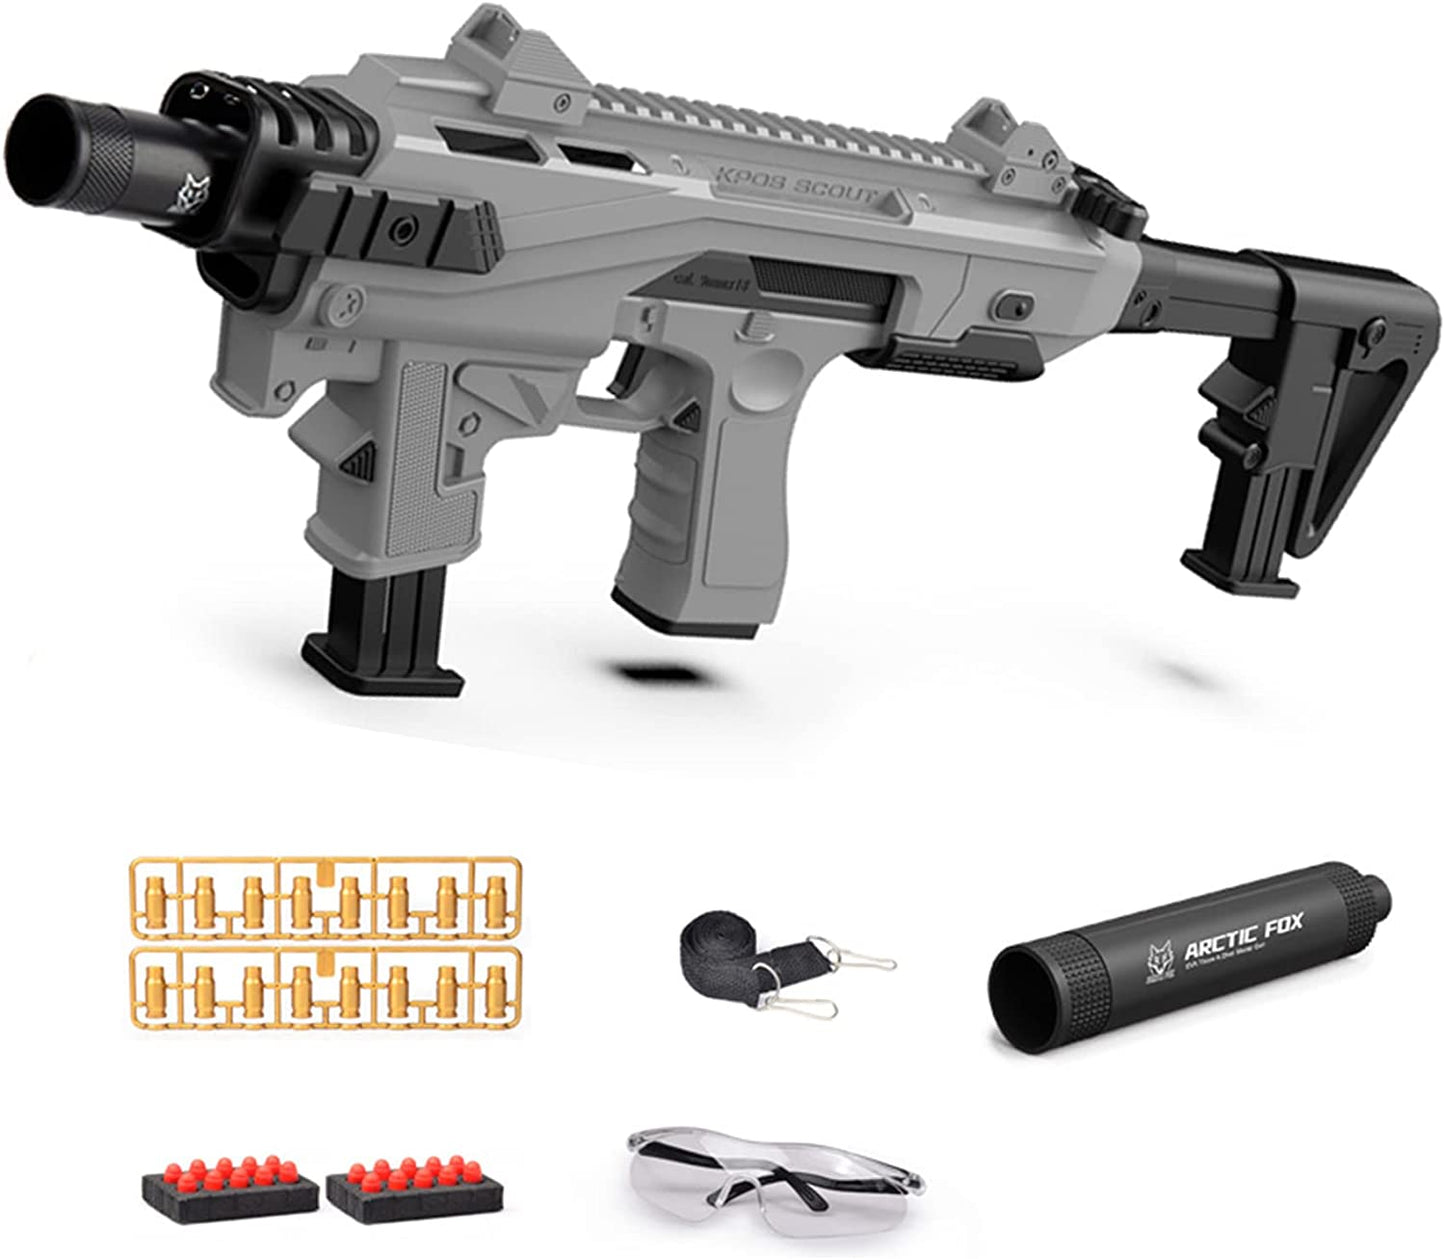 サブマシンガン風おもちゃ銃 グロック型カービンキット グリーン レーザー ライト ダットサイト付きスポンジ弾 正規品